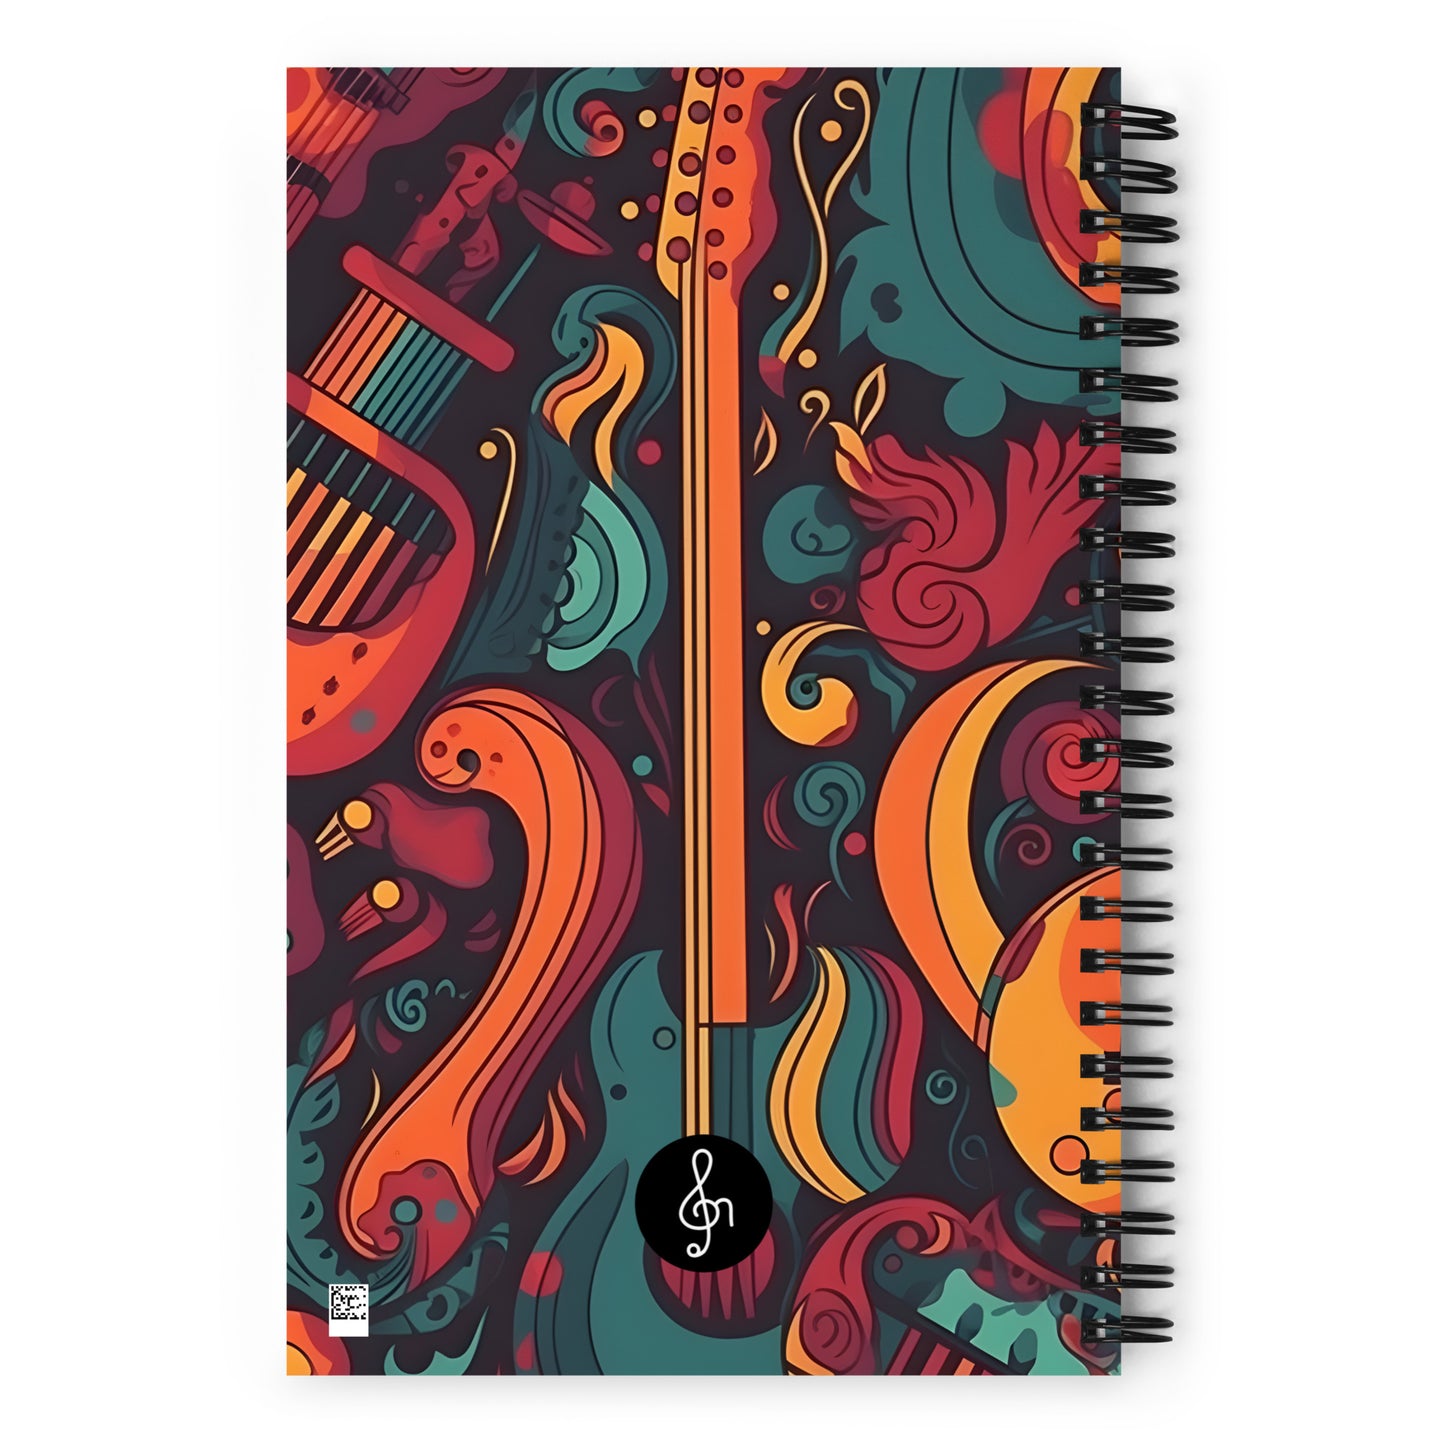 Spiral Notebook Retro 1